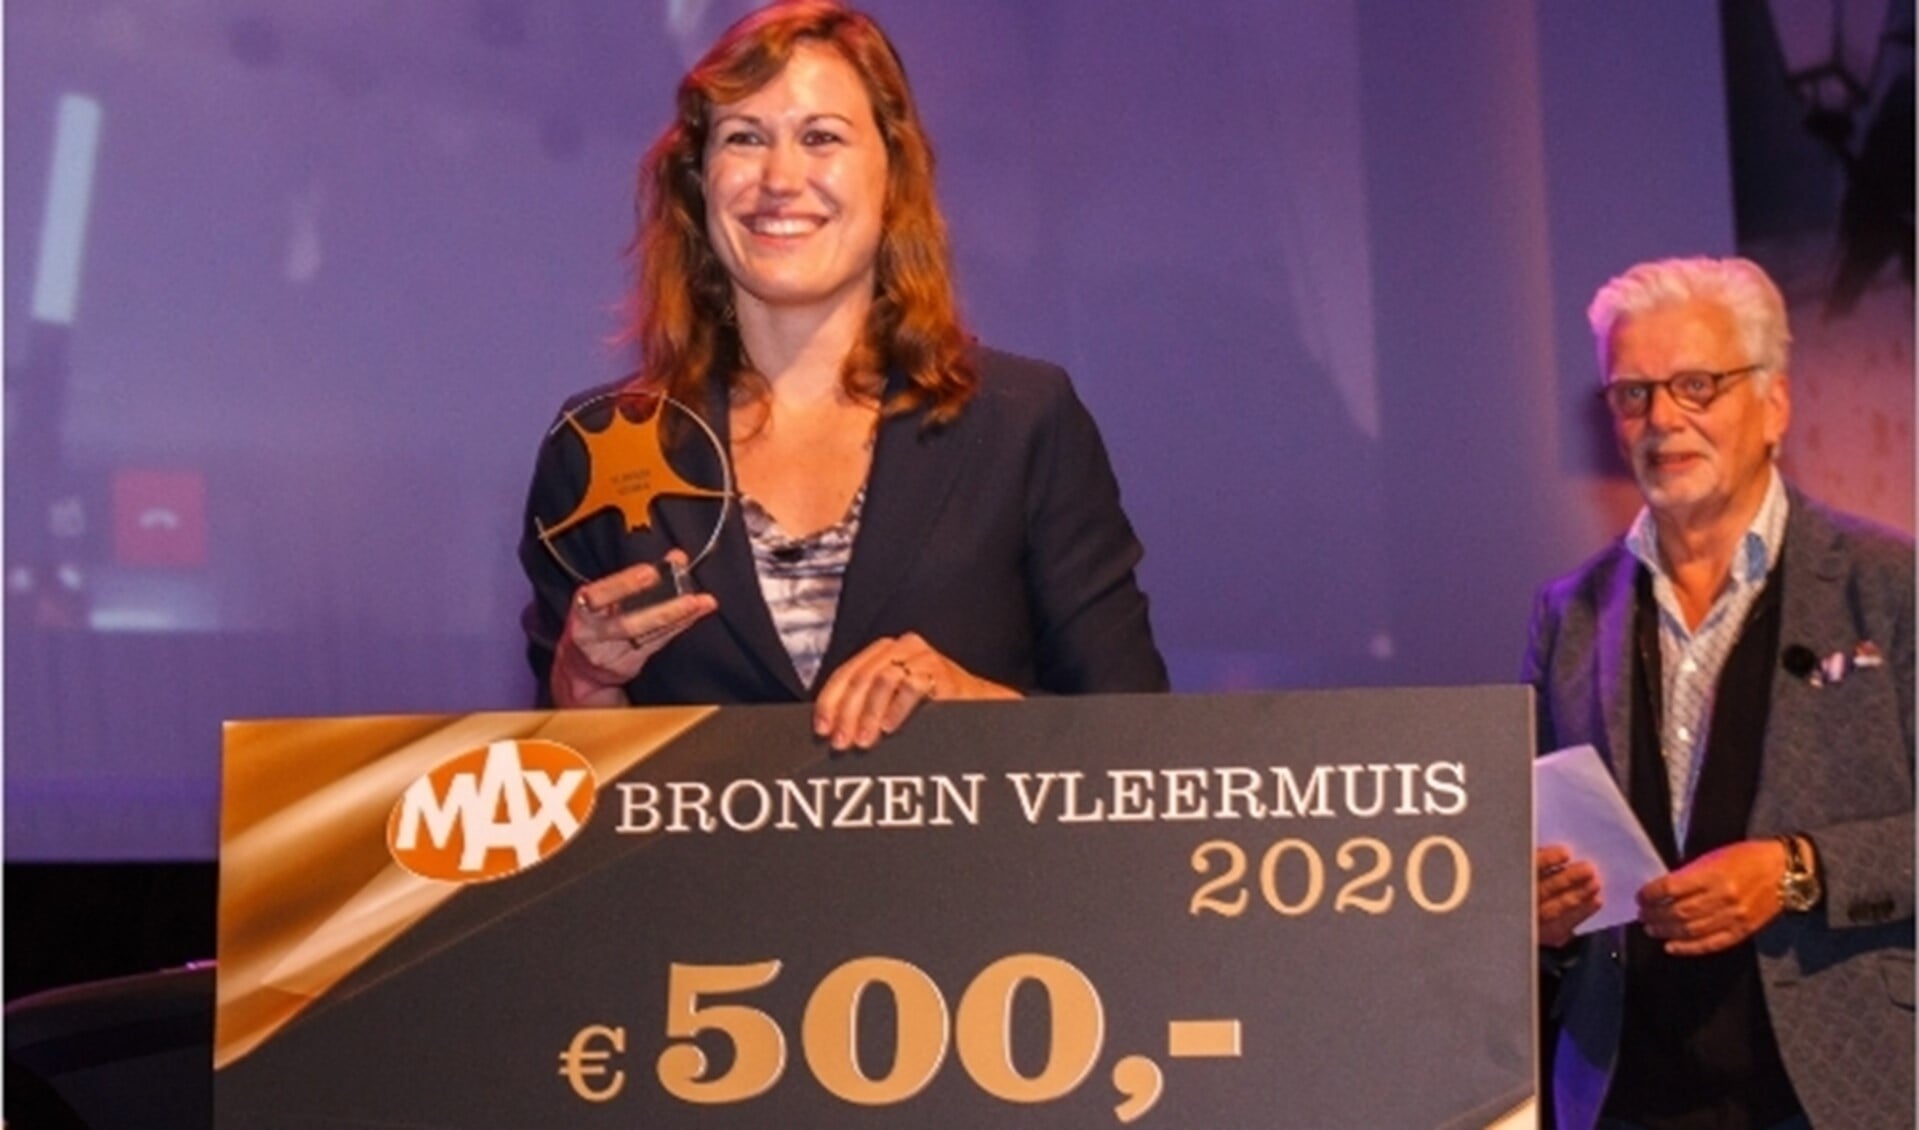 Vertegenwoordigster van de uitgeverij van Mohlin & Nyström neemt de bronzen vleermuis in ontvangst. 